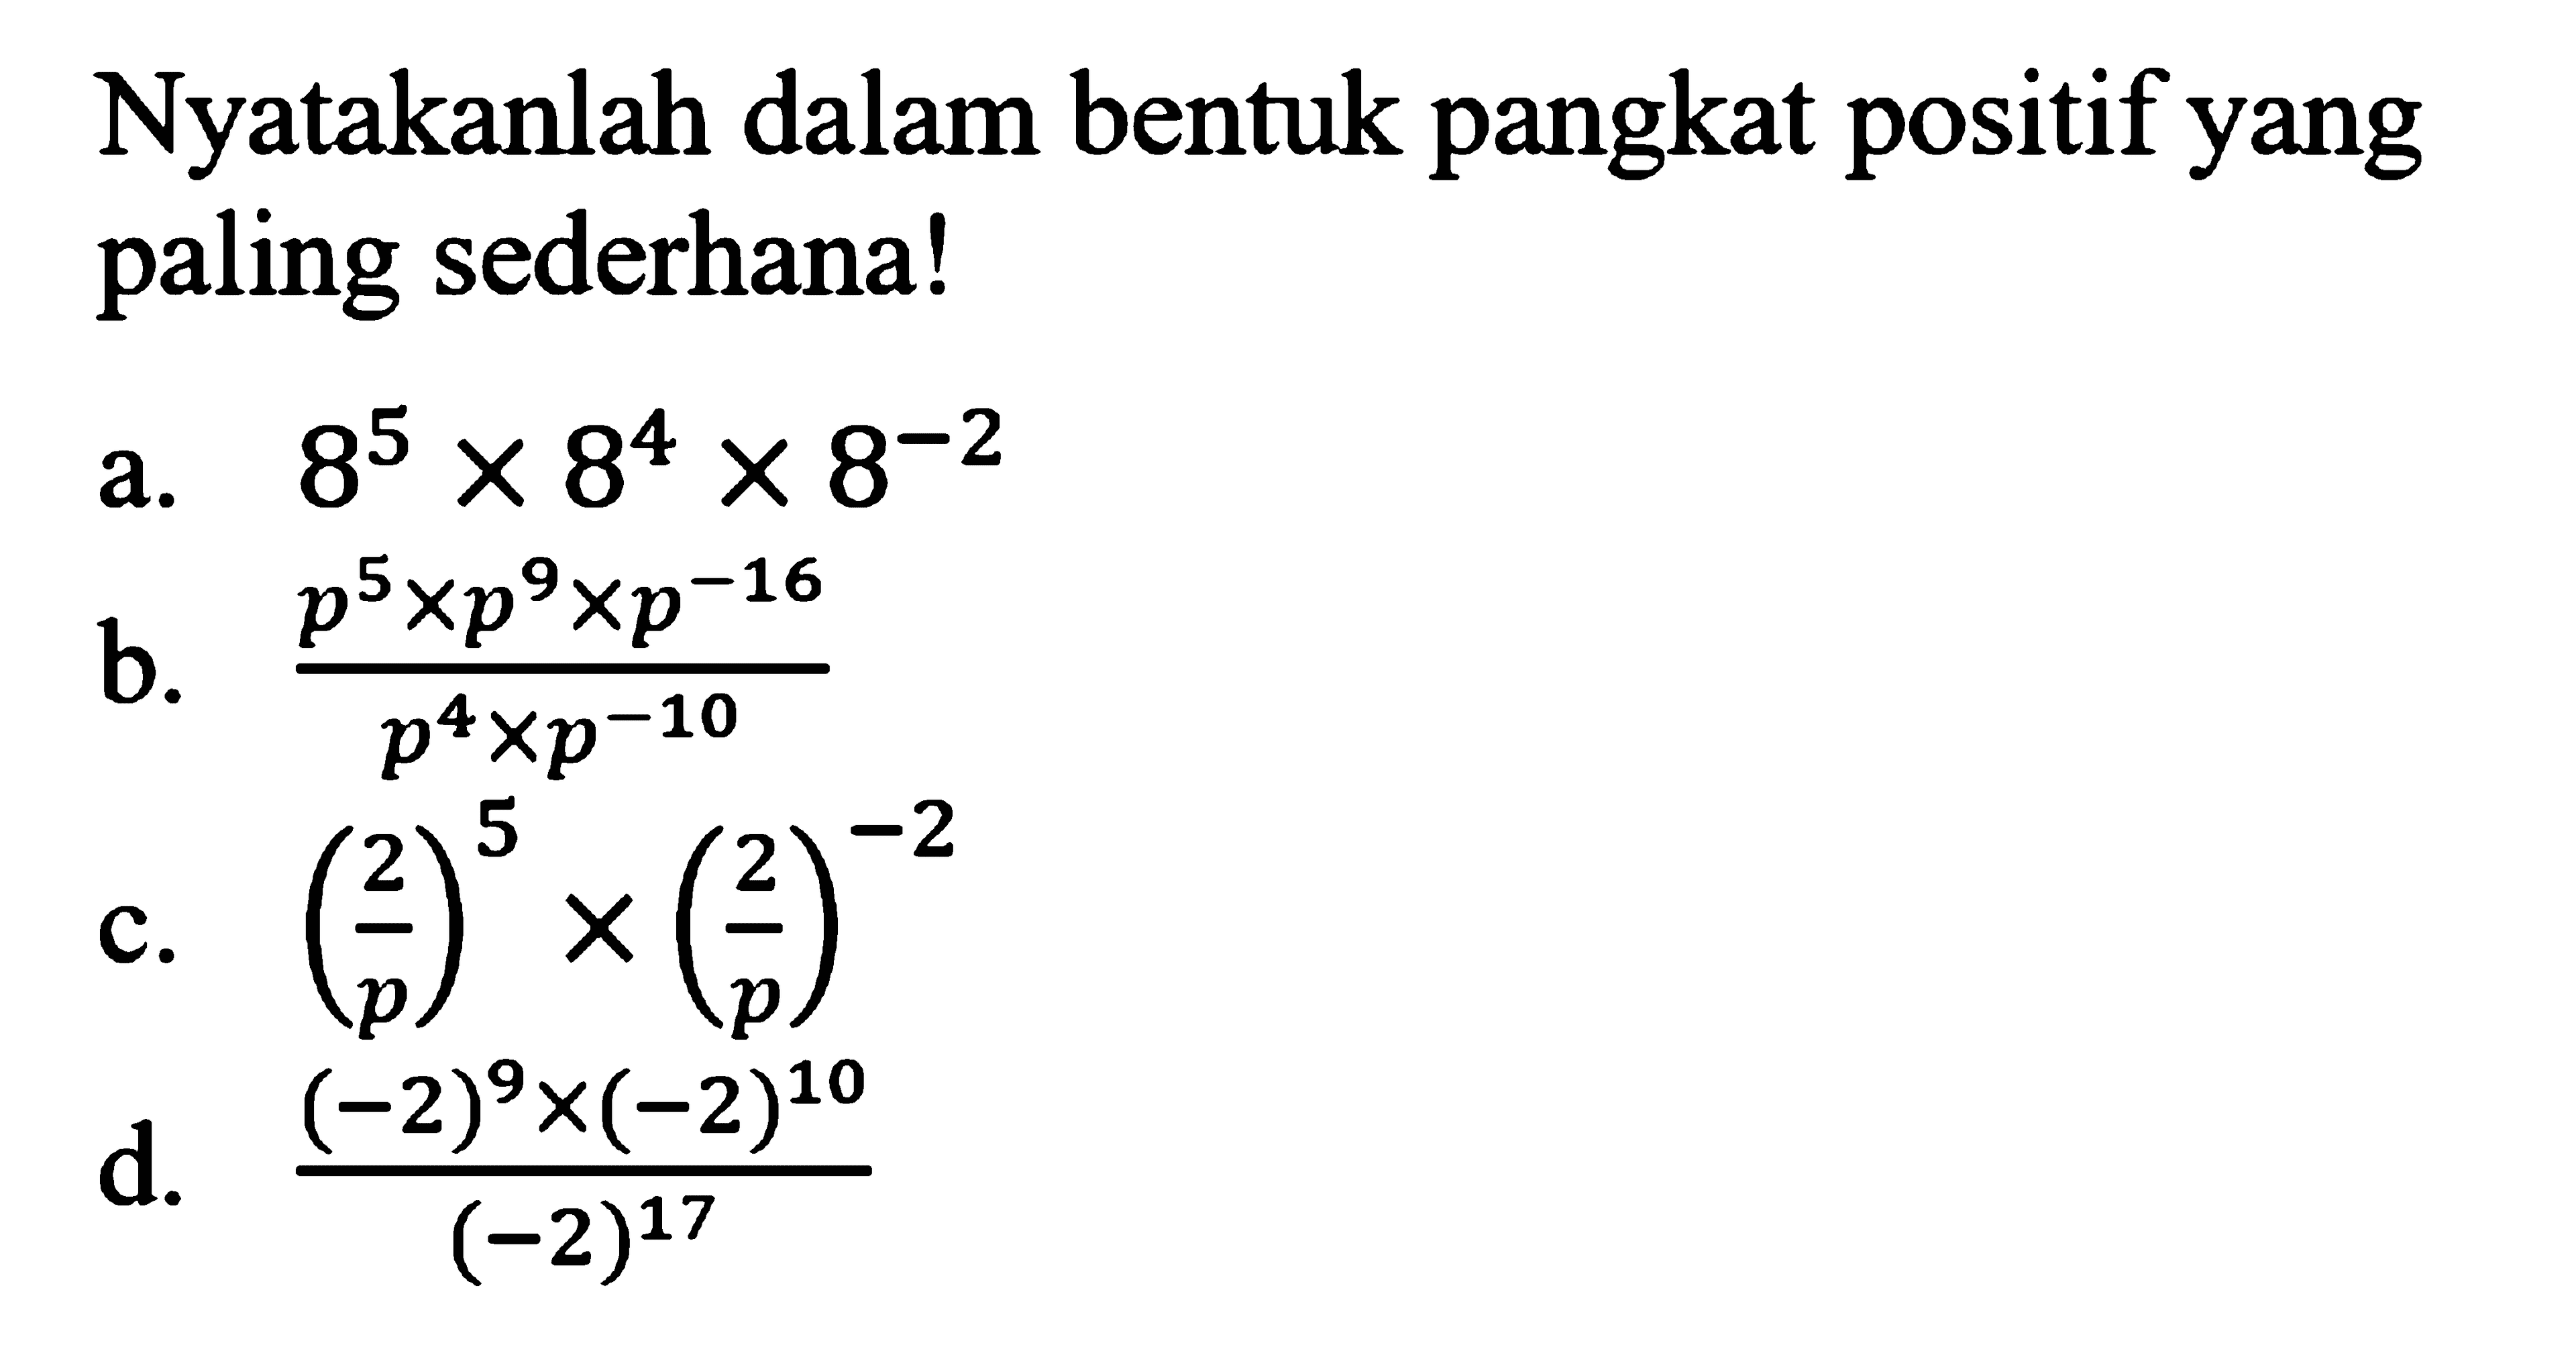 Nyatakanlah dalam bentuk pangkat positif yang paling sederhana! a. 8^5 x 8^4 x 8^(-2) b. (p^5 x p^9 x p^(-16))/(p^4 x p^(-10)) c. (2/p)^5 x (2/p)^(-2) d. ((-2)^9 x (-2)^10)/(-2)^17